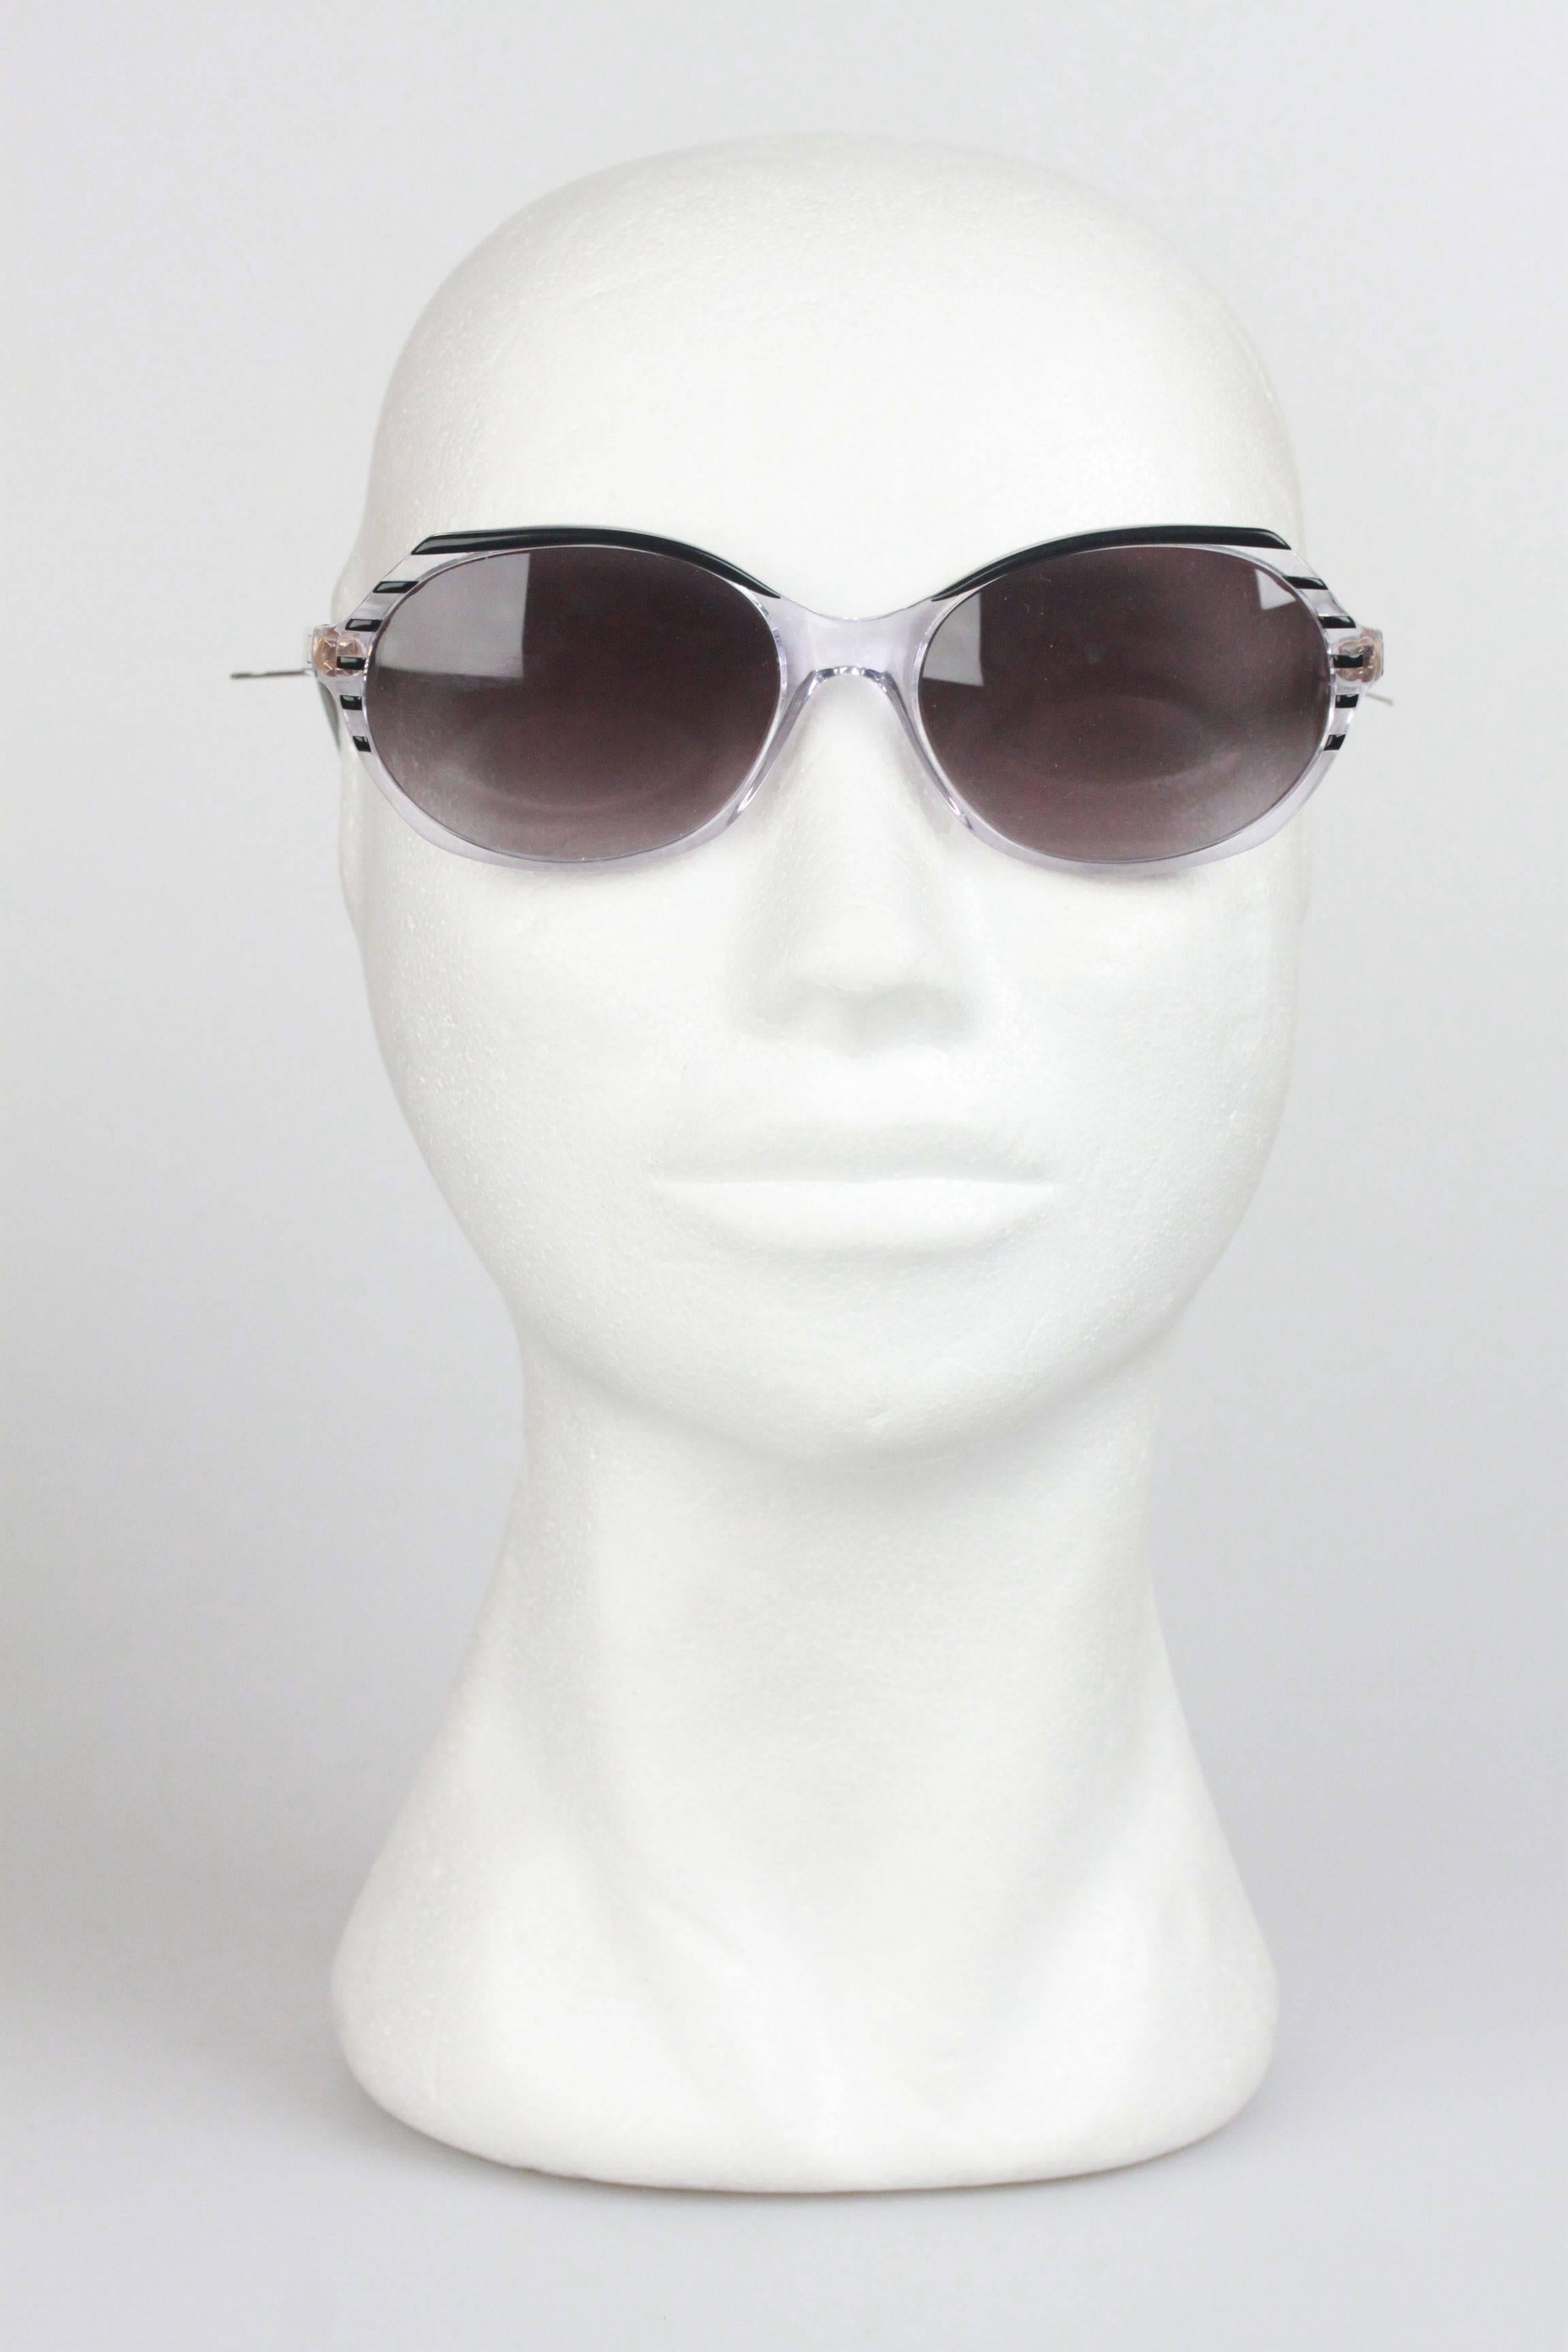 YVES SAINT LAURENT Vintage MINT Black Sunglasses CARISTE 2 58-16mm 4